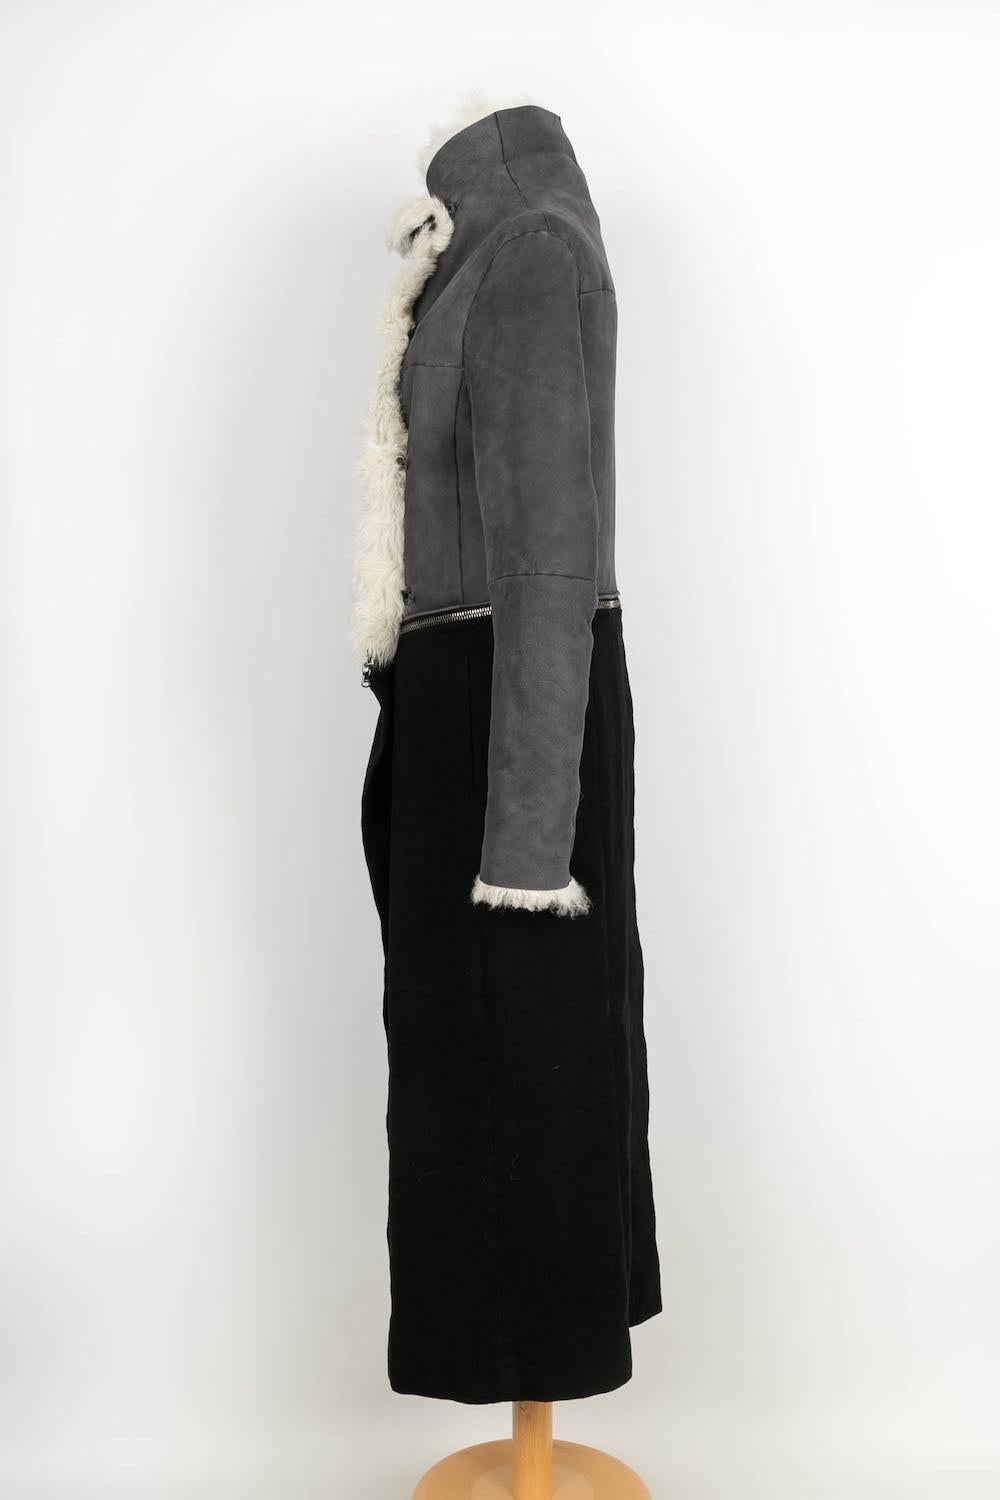 Peachoo + Krejberg - (Made in Italy) Mantel aus Leder und Wolle. Der untere Teil kann mit einem Reißverschluss zu einer Jacke umfunktioniert werden. Größe S.

Zusätzliche Informationen:
Zustand: Sehr guter Zustand
Abmessungen: Schulterbreite: 45 cm